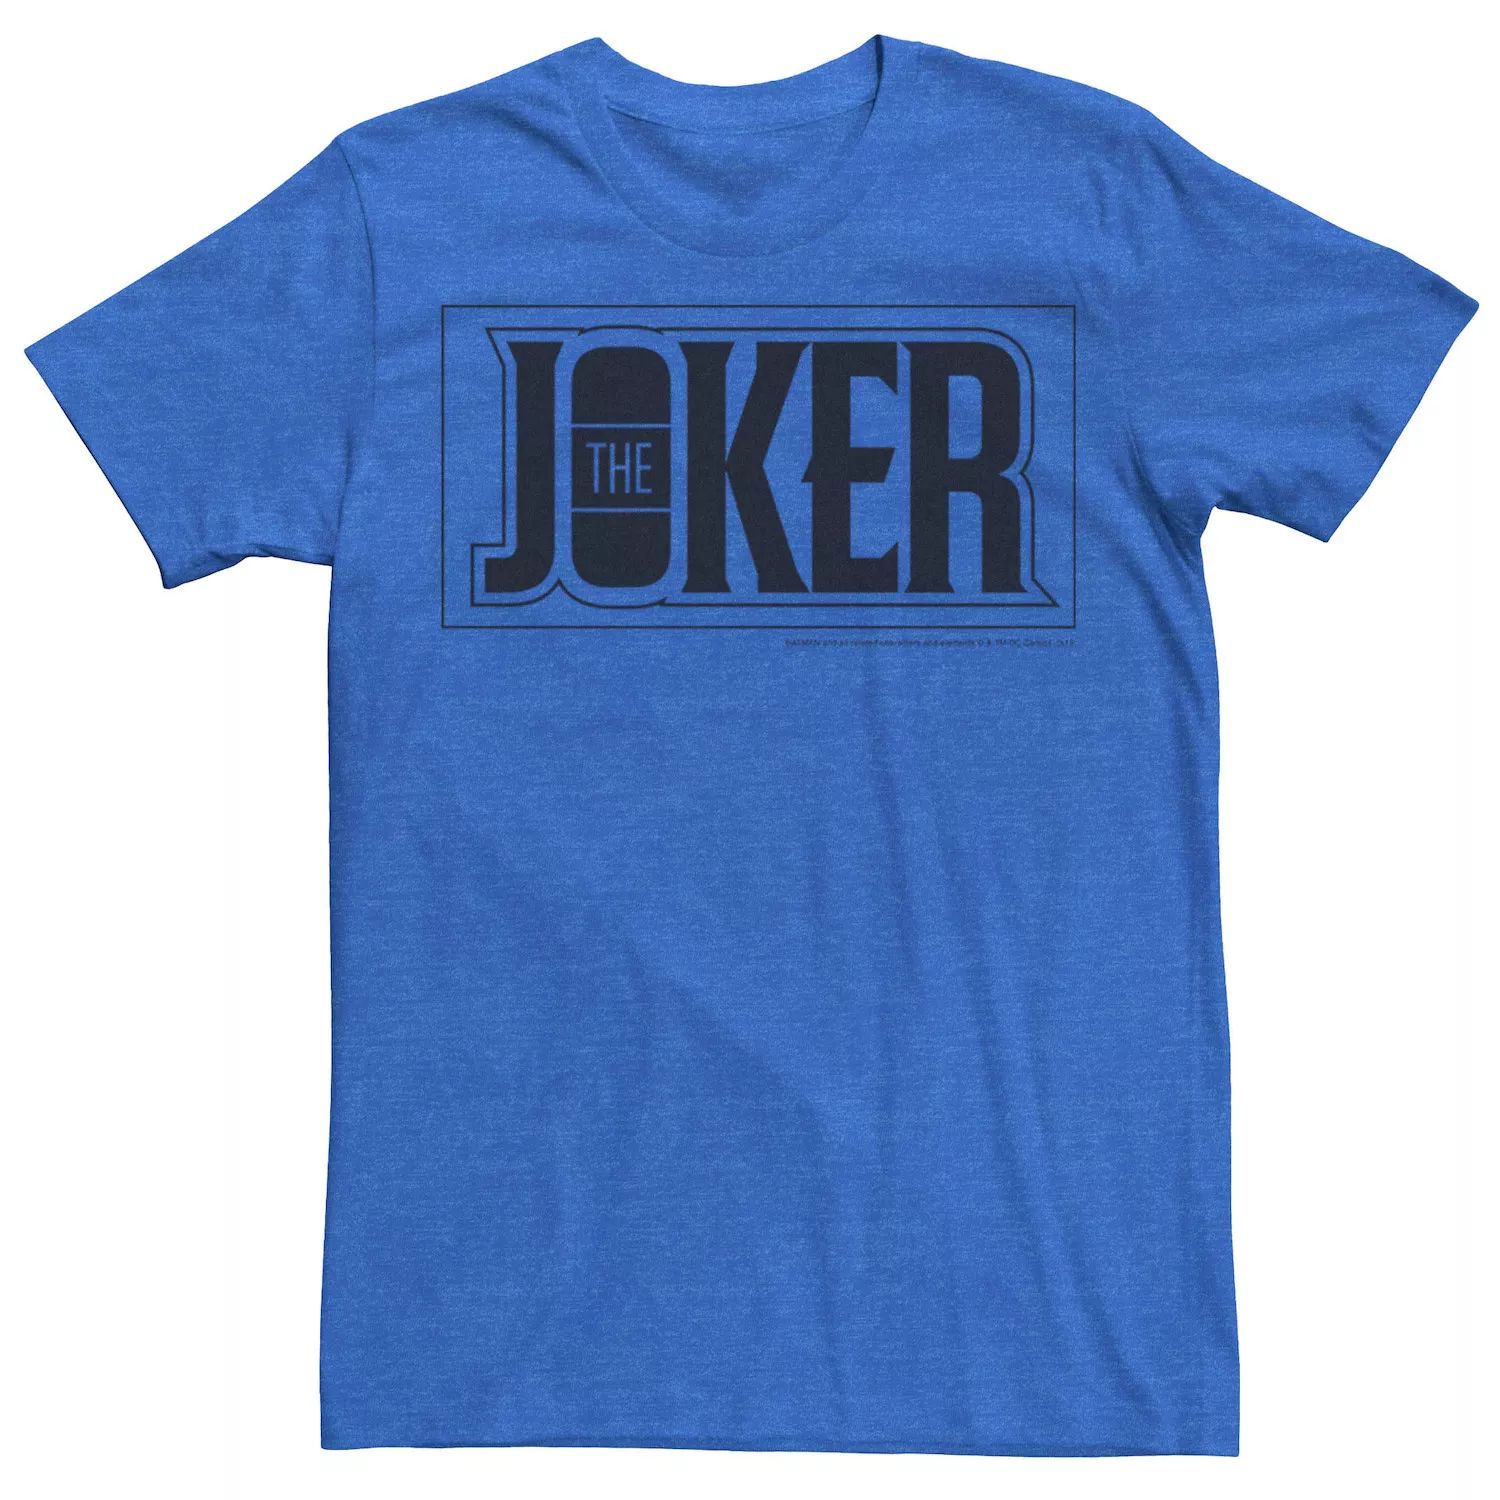 цена Мужская футболка с плакатом и жирным текстом The Joker DC Comics